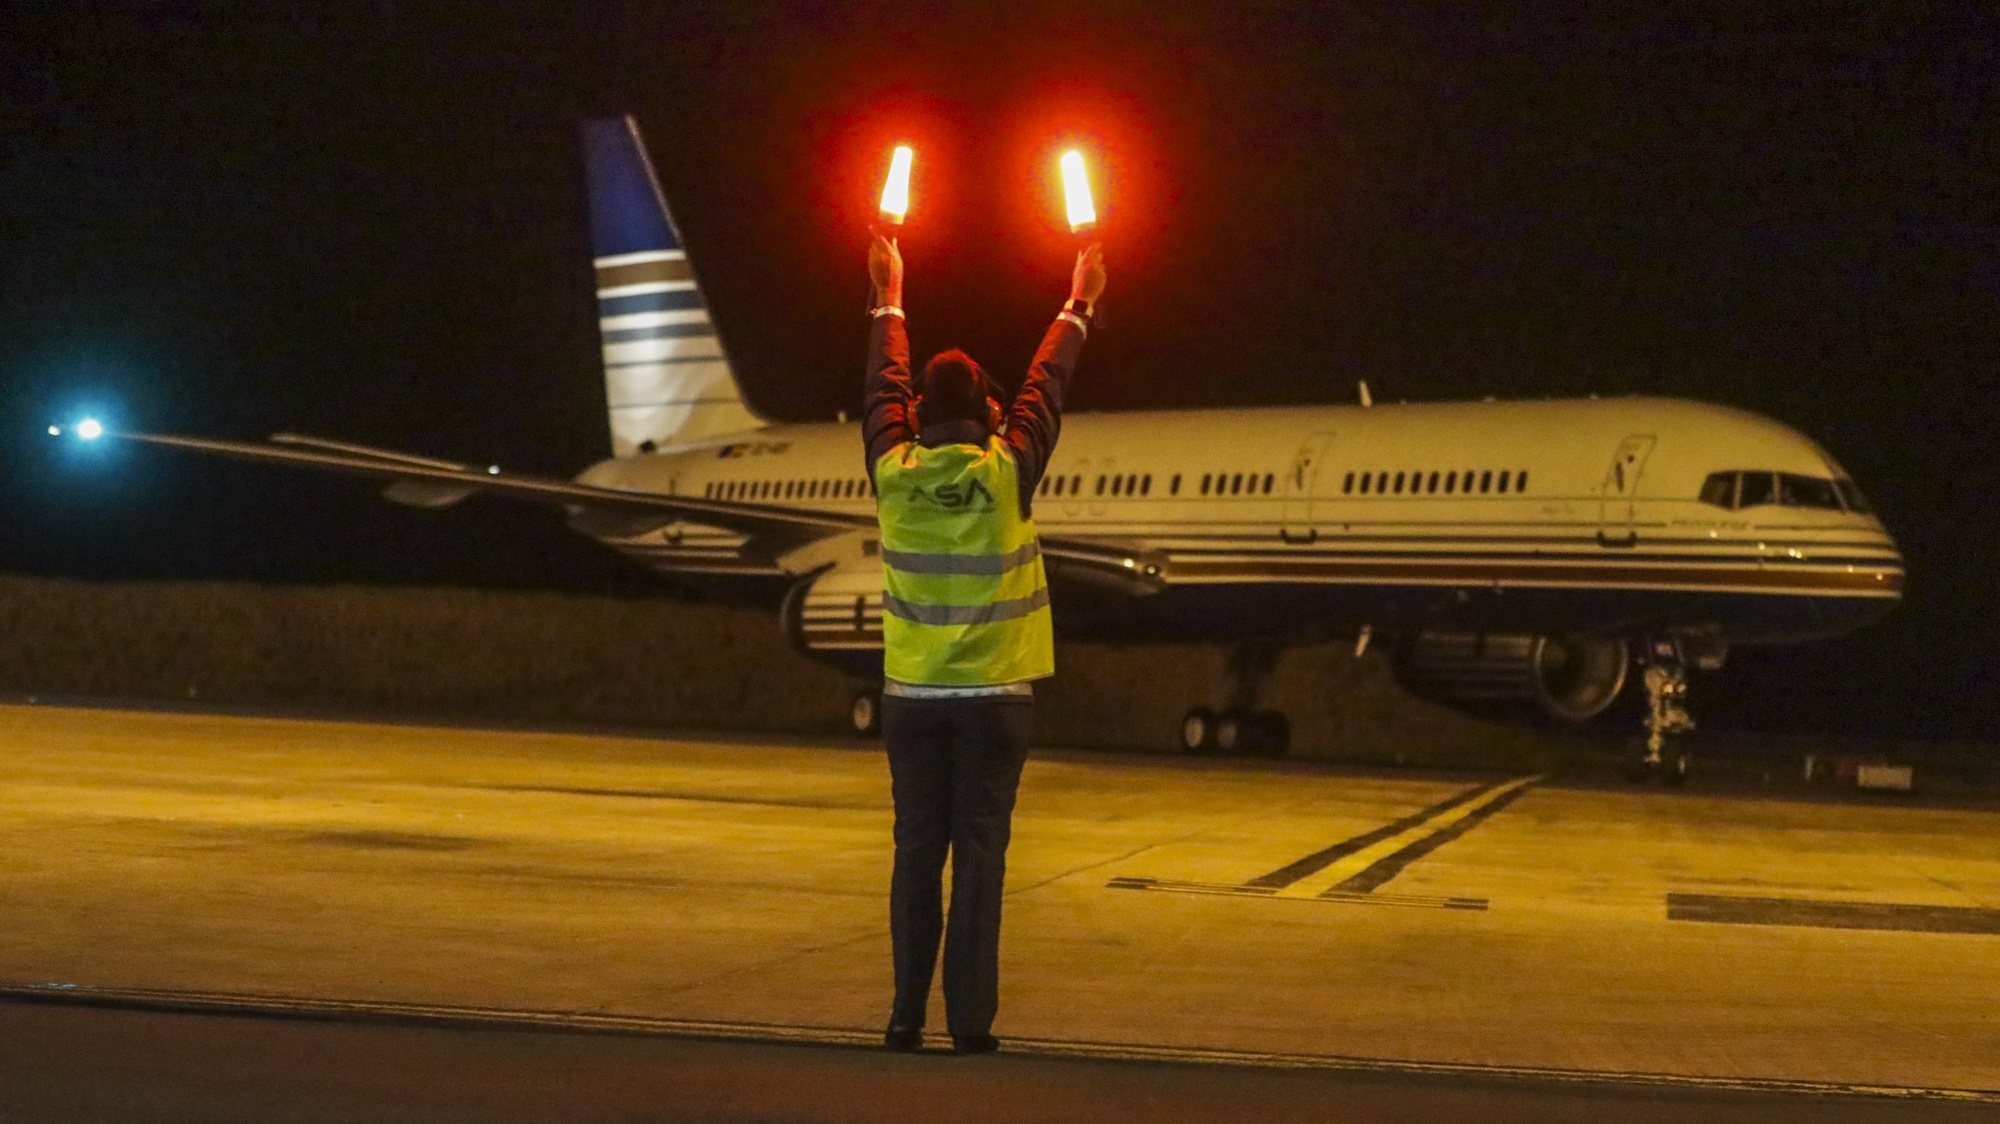 Avião da TACV - Transportes Aéreos de Cabo Verde S.A., no dia da  retoma dos voos 19 meses depois, no aeroporto internacional da Praia, Cidade da Praia, Cabo Verde, 27 de dezembro de 2021. ELTON MONTEIRO/ LUSA